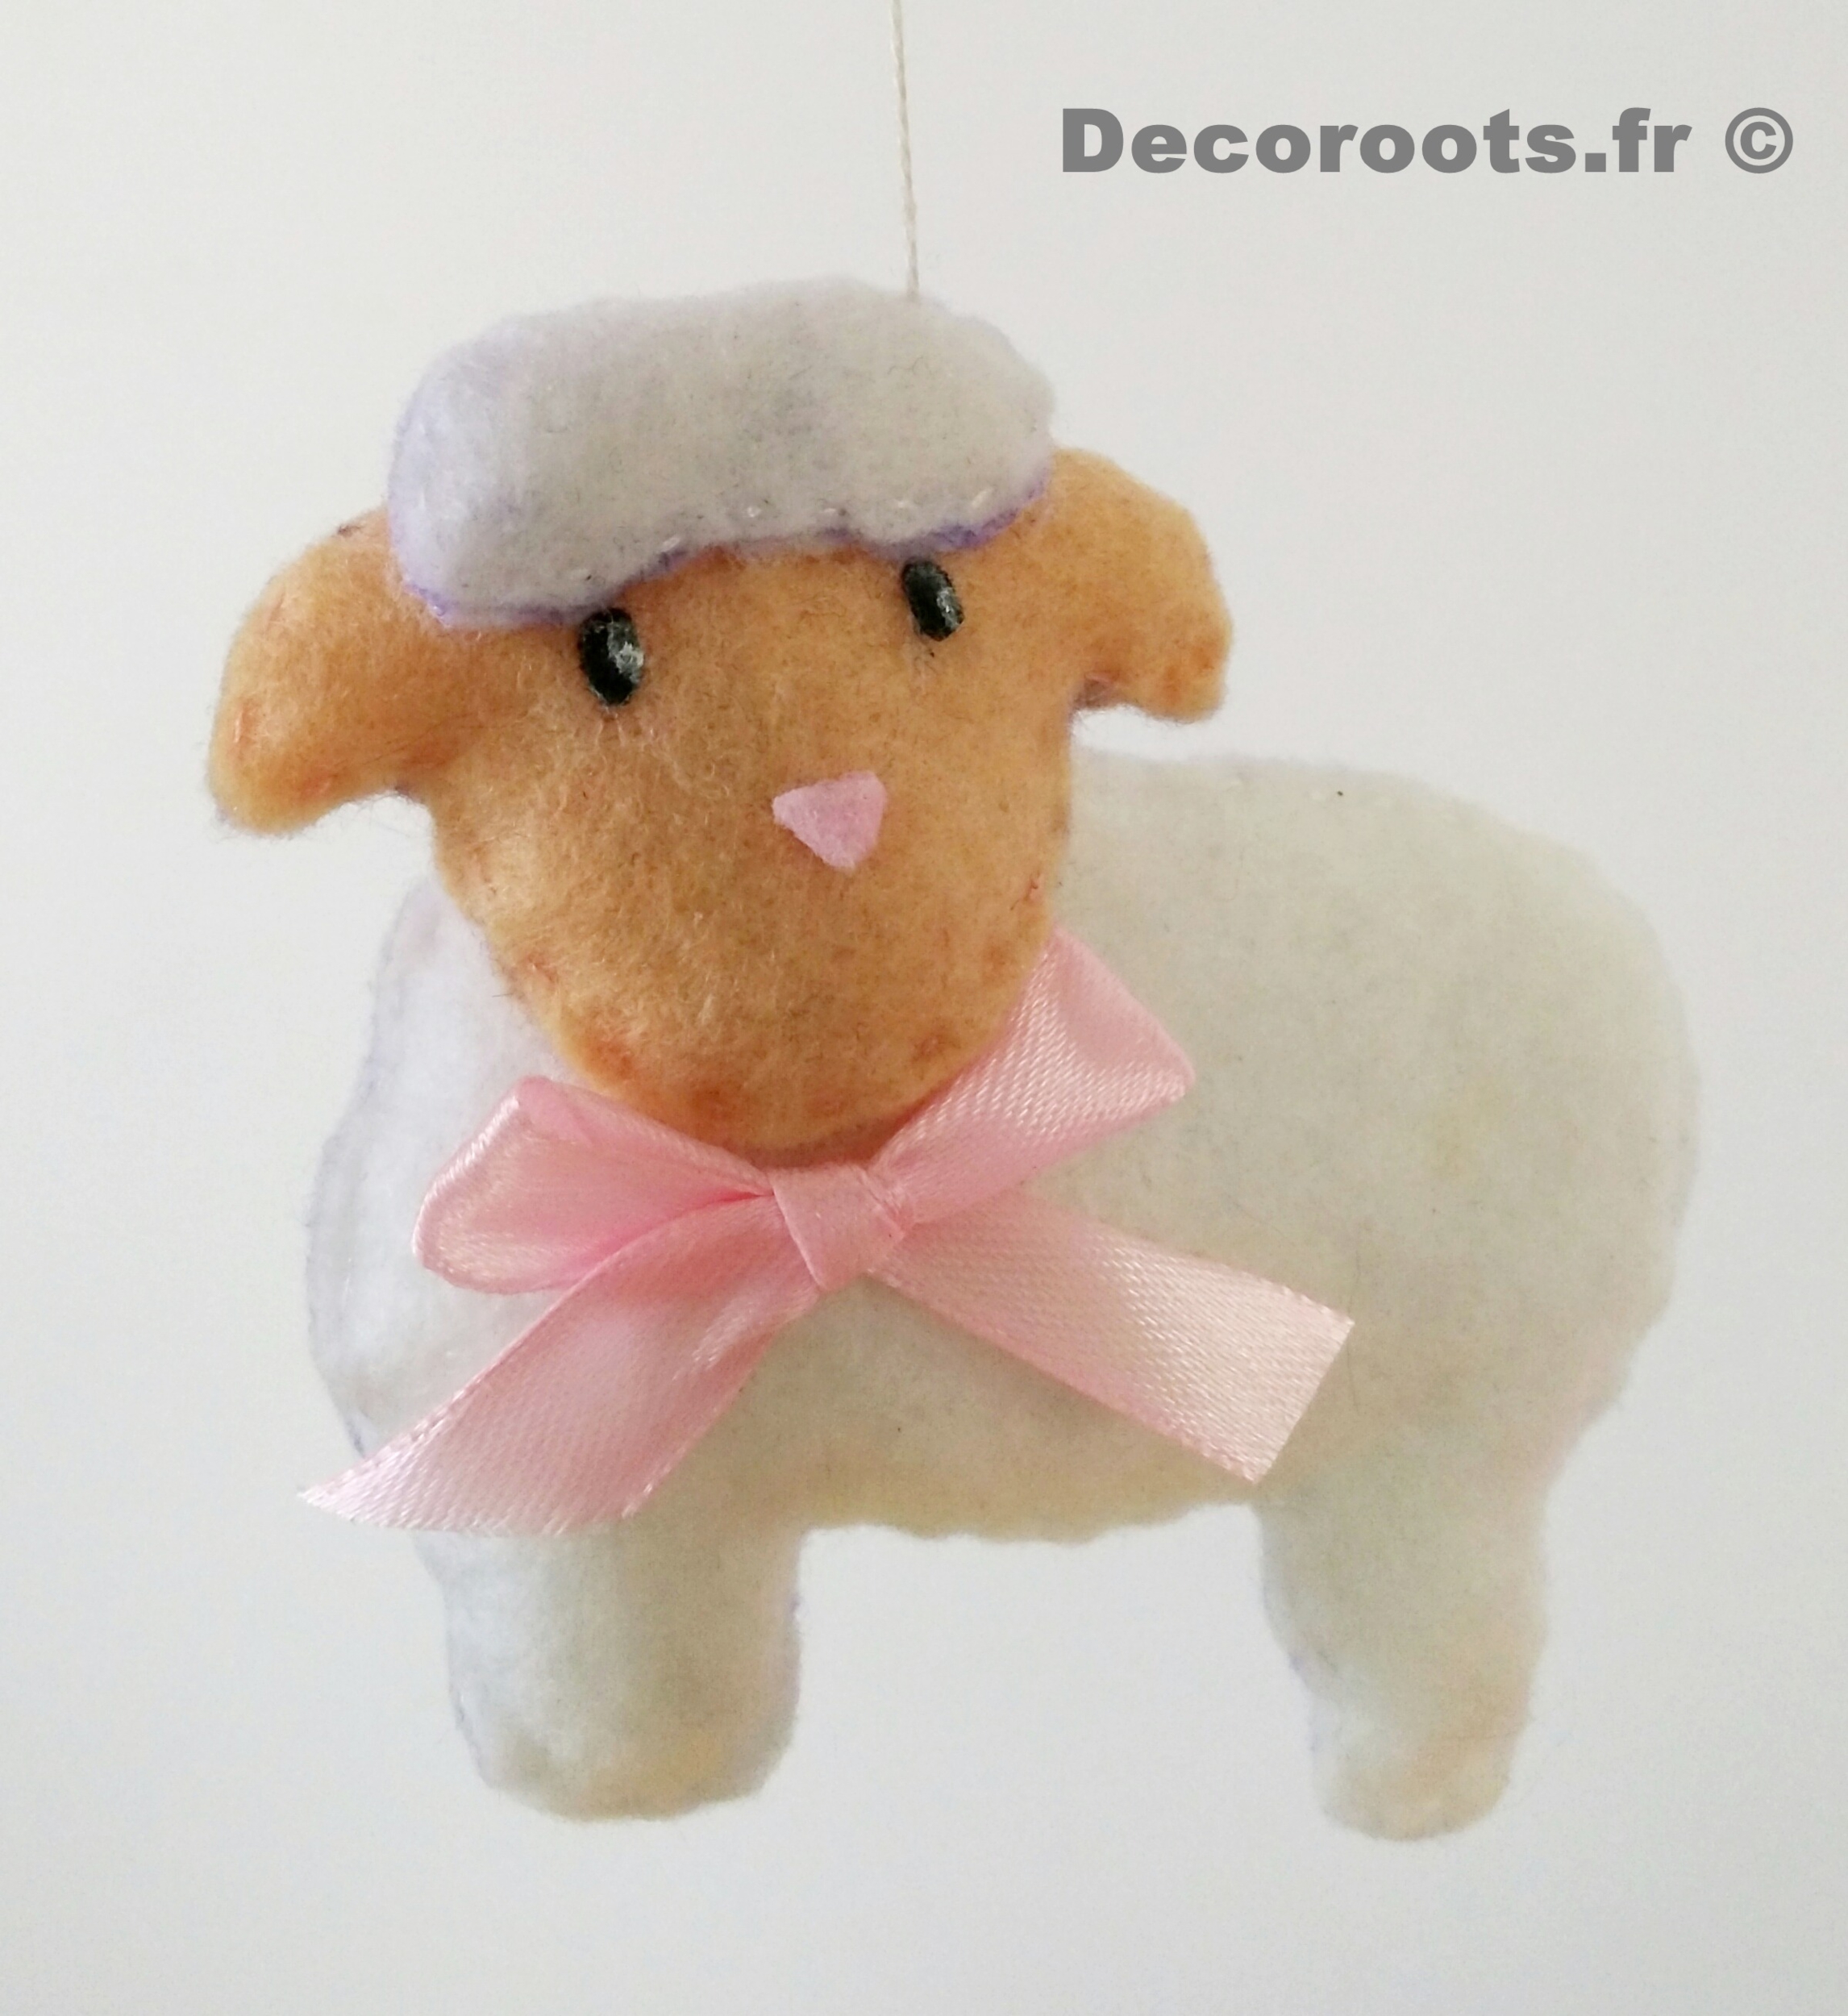 mobile bébé animaux fille ours lapin mouton chat rose blanc gris cadeau naissance 3